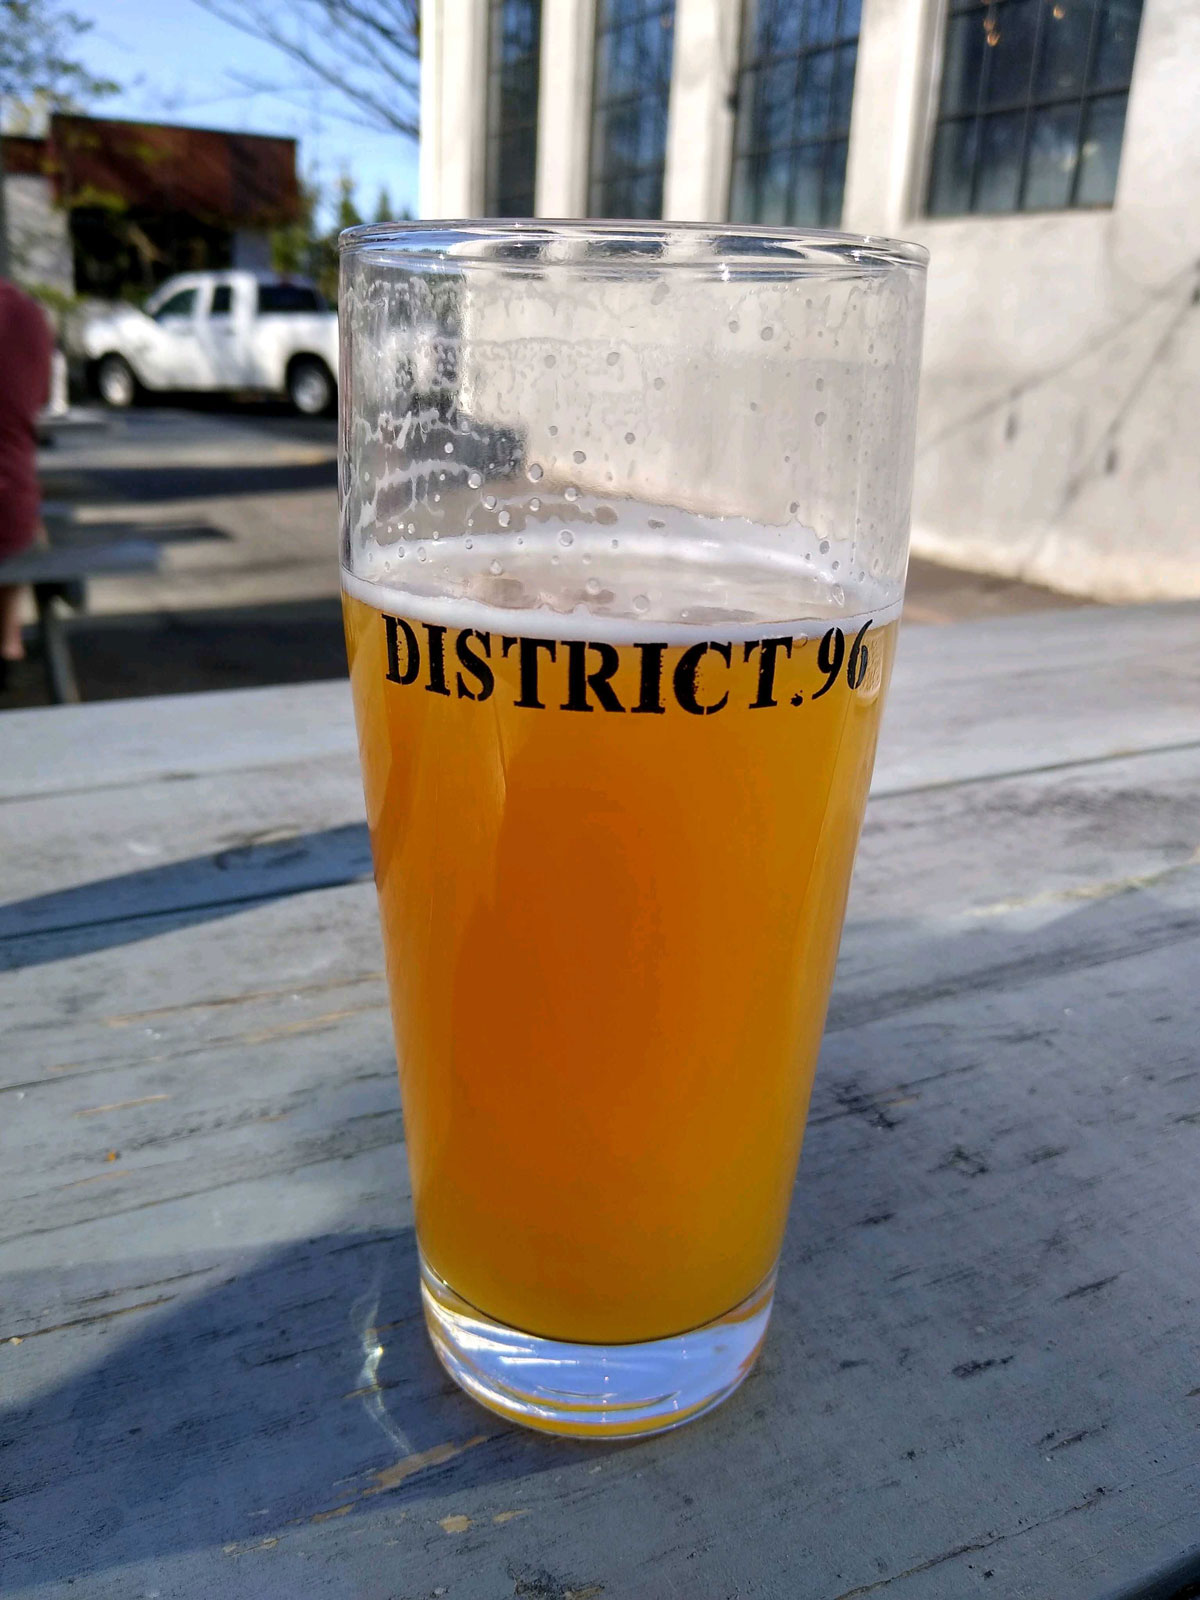 District 96 beer factory